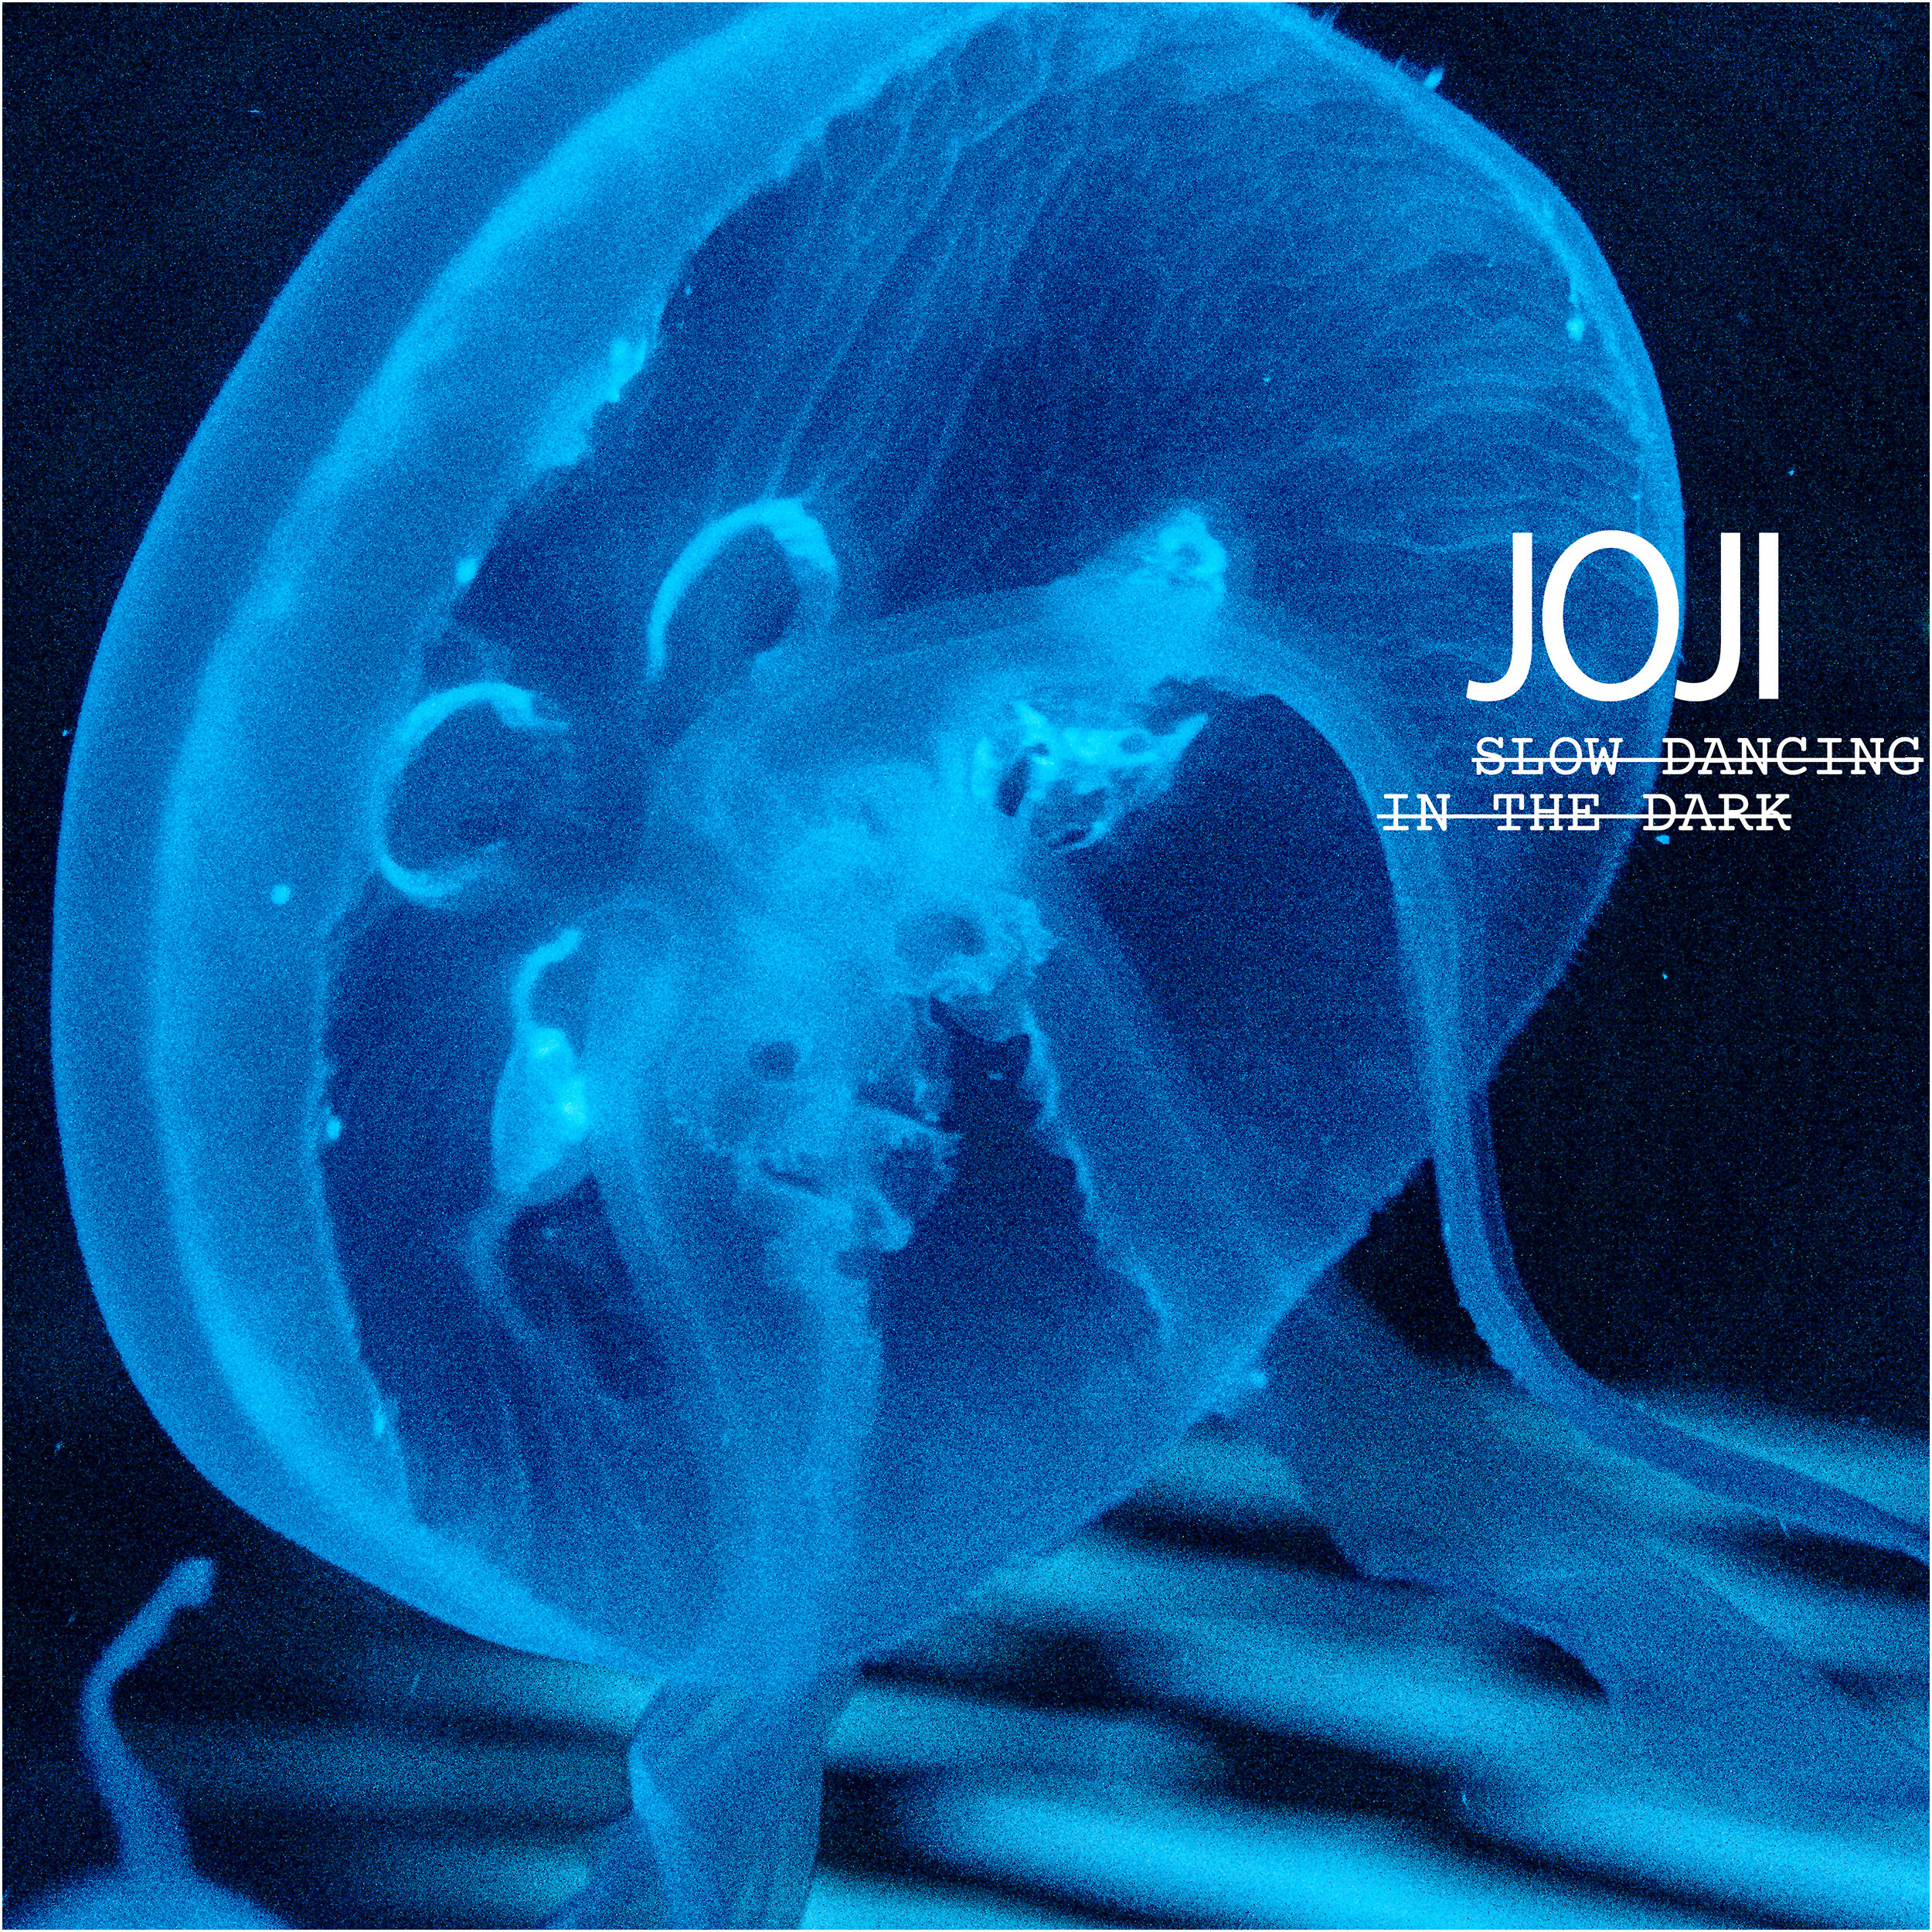 Album Image for Joji's "Slow Dancing in the Dark"